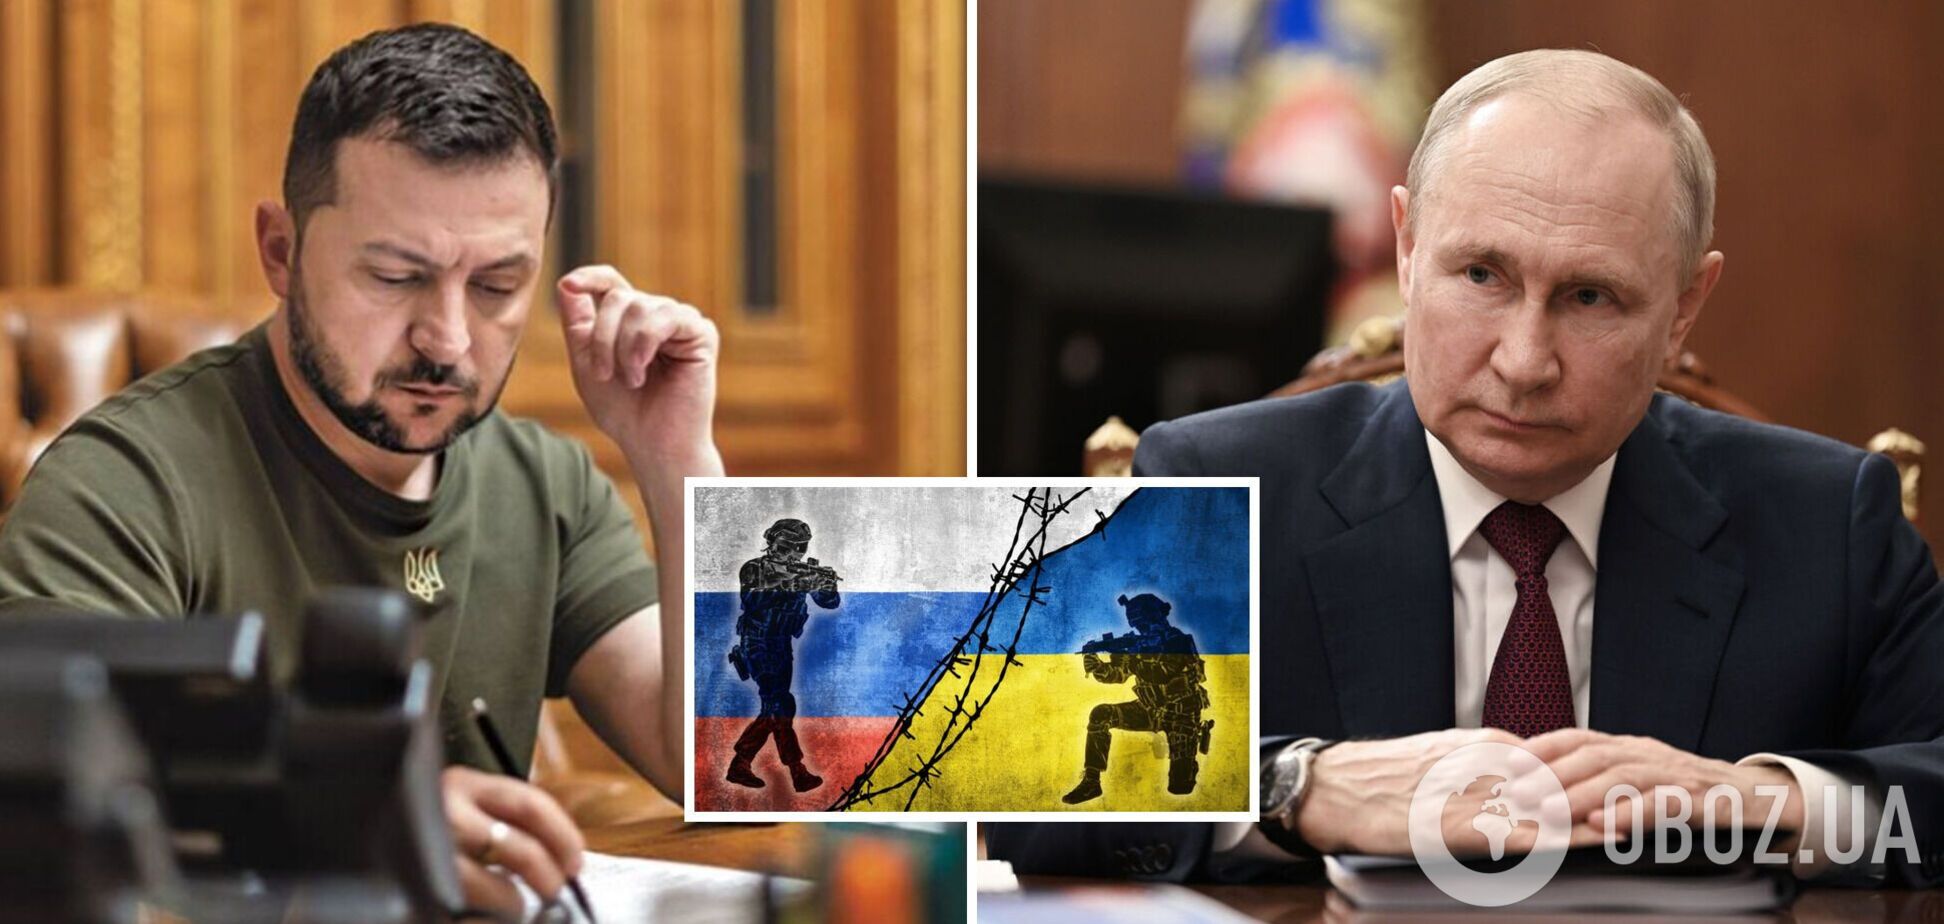 'Театральні жести не потрібні': Путін зробив цинічну заяву про переговори з Україною і згадав США 